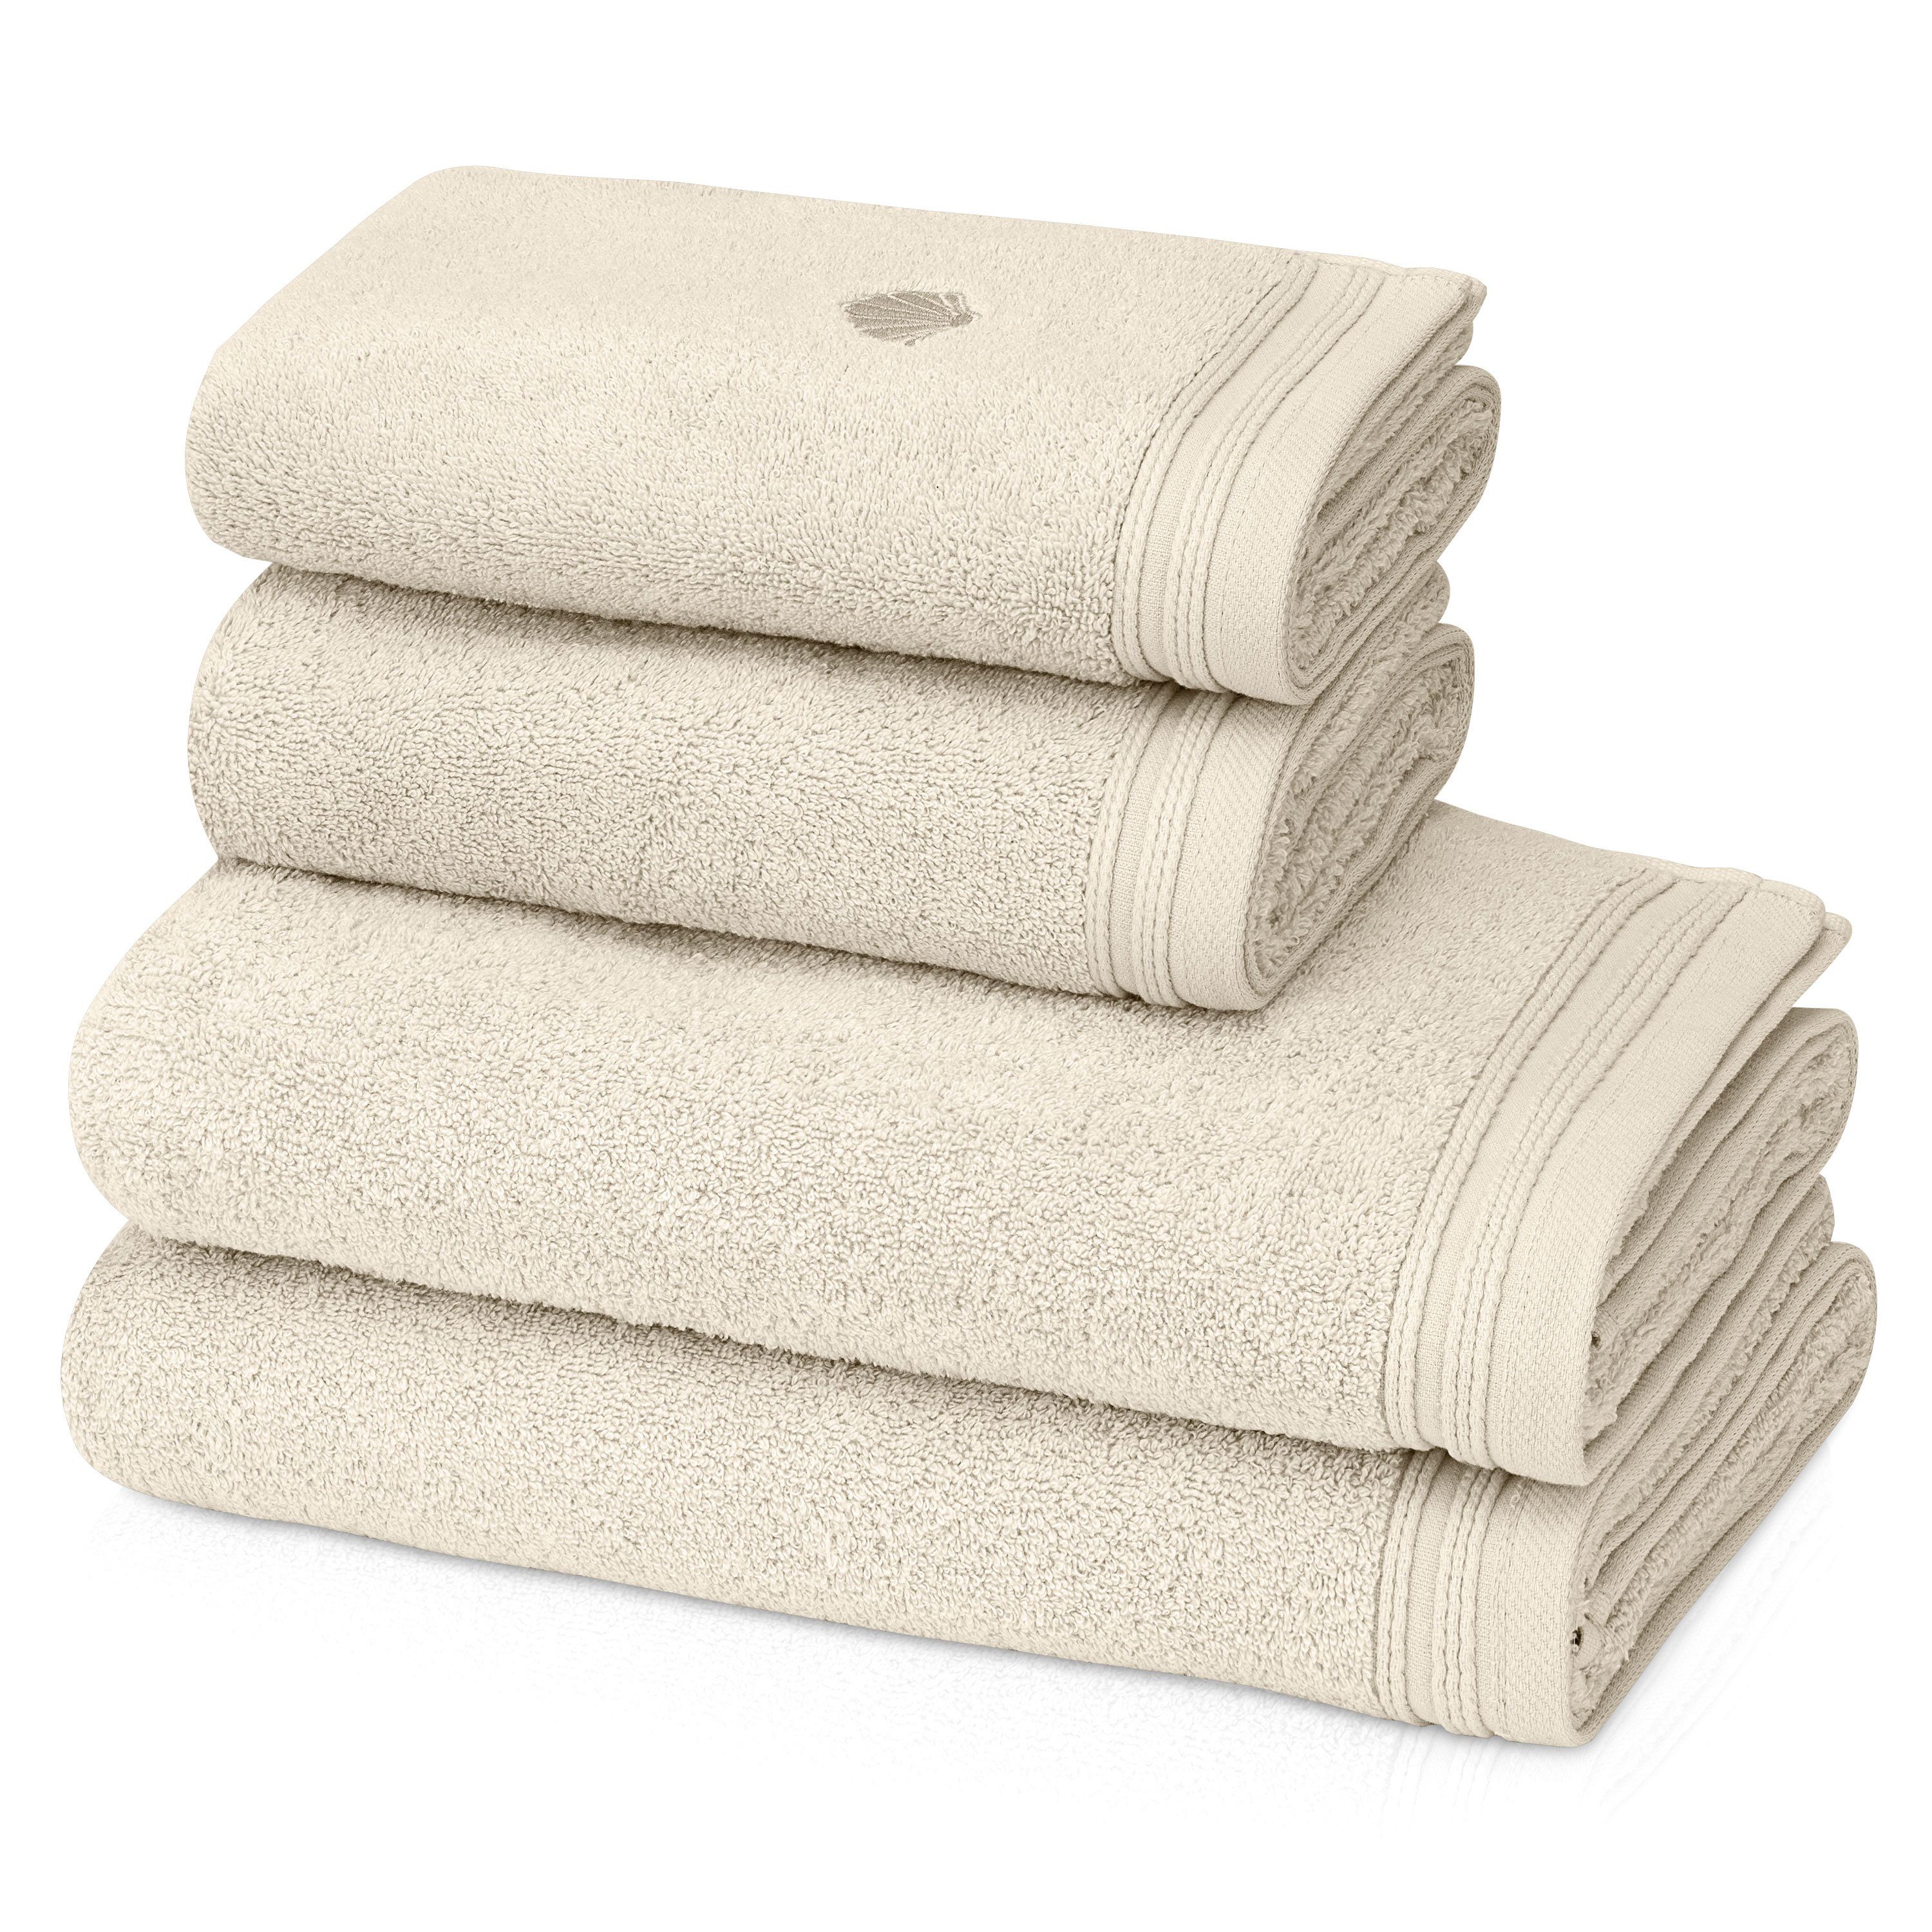 KLASBROOK Handtuch Set Linnea, (2-tlg), 2, 4 oder 6 teiliges Luxus Set, 100% Baumwolle, extra flauschig 05 Sand